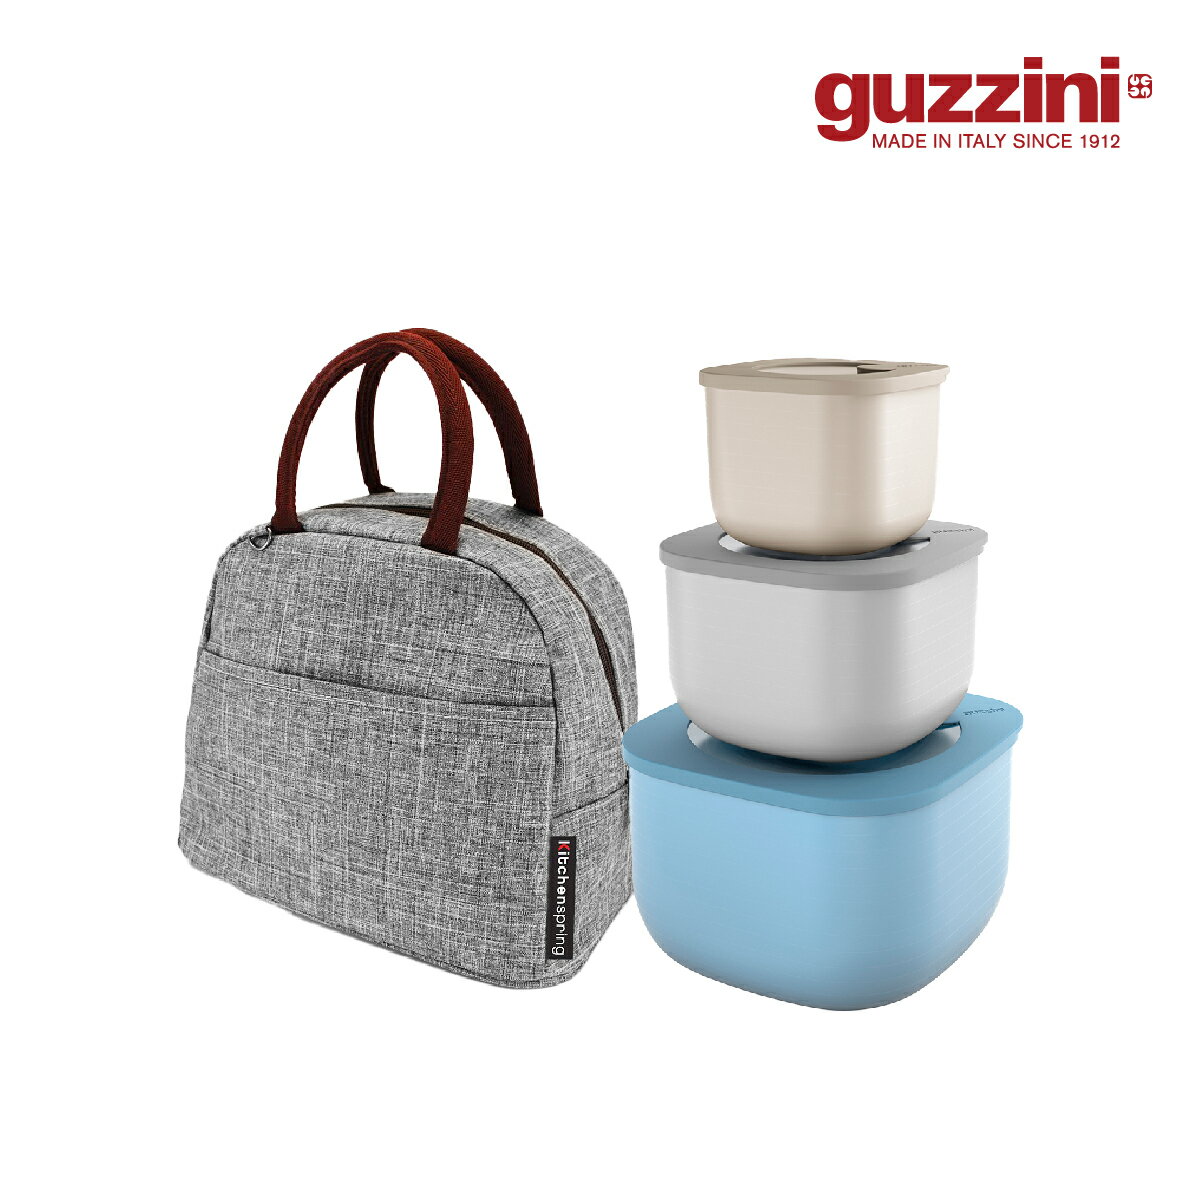 【Guzzini】Store & More系列 高身常鮮盒 優惠三入套組(藍/灰/米) 加贈 時尚保冷保溫袋